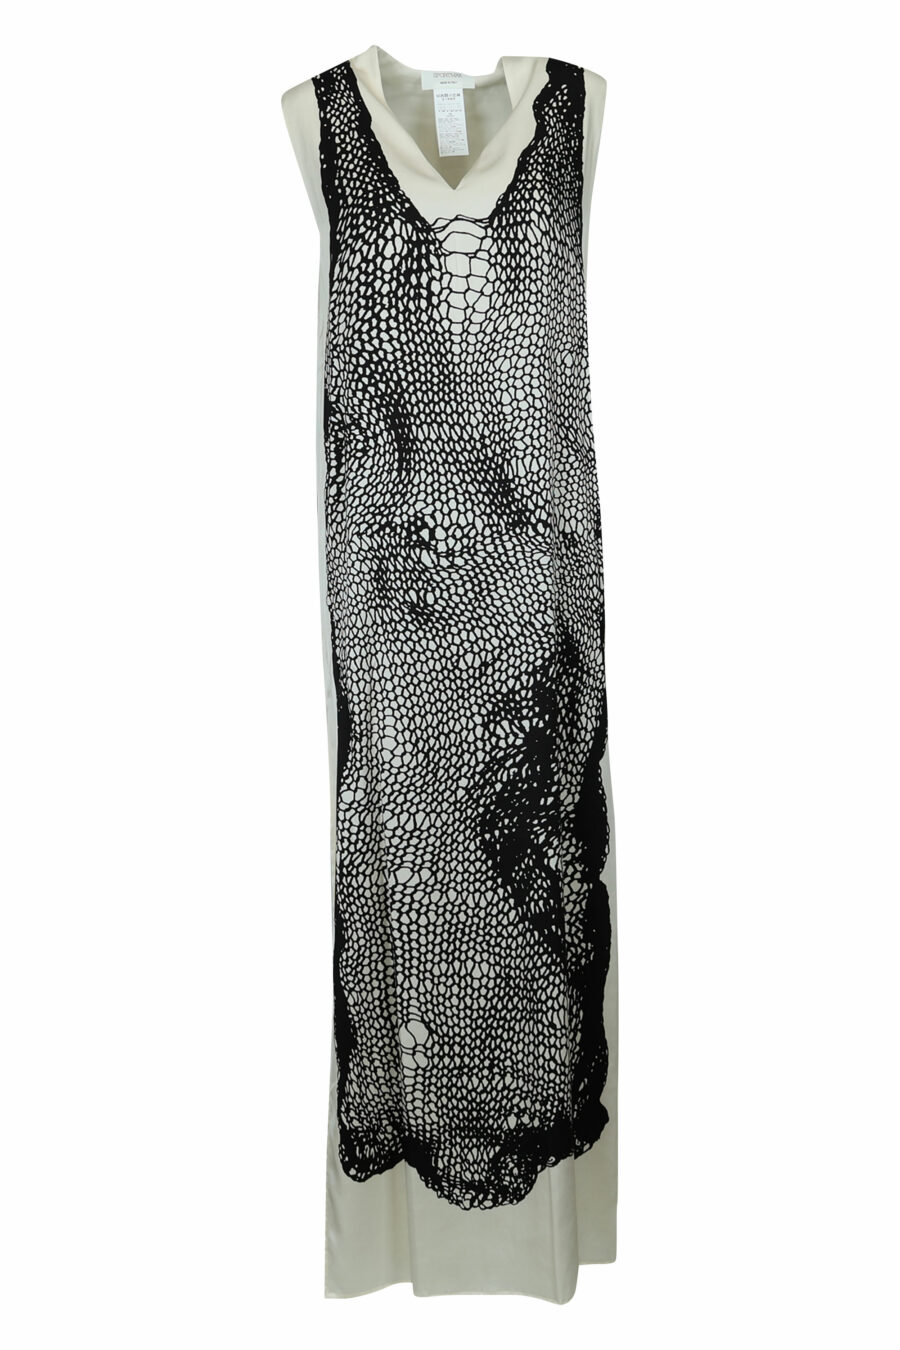 Schwarzes Kleid mit Netzdruck - 22210842060023